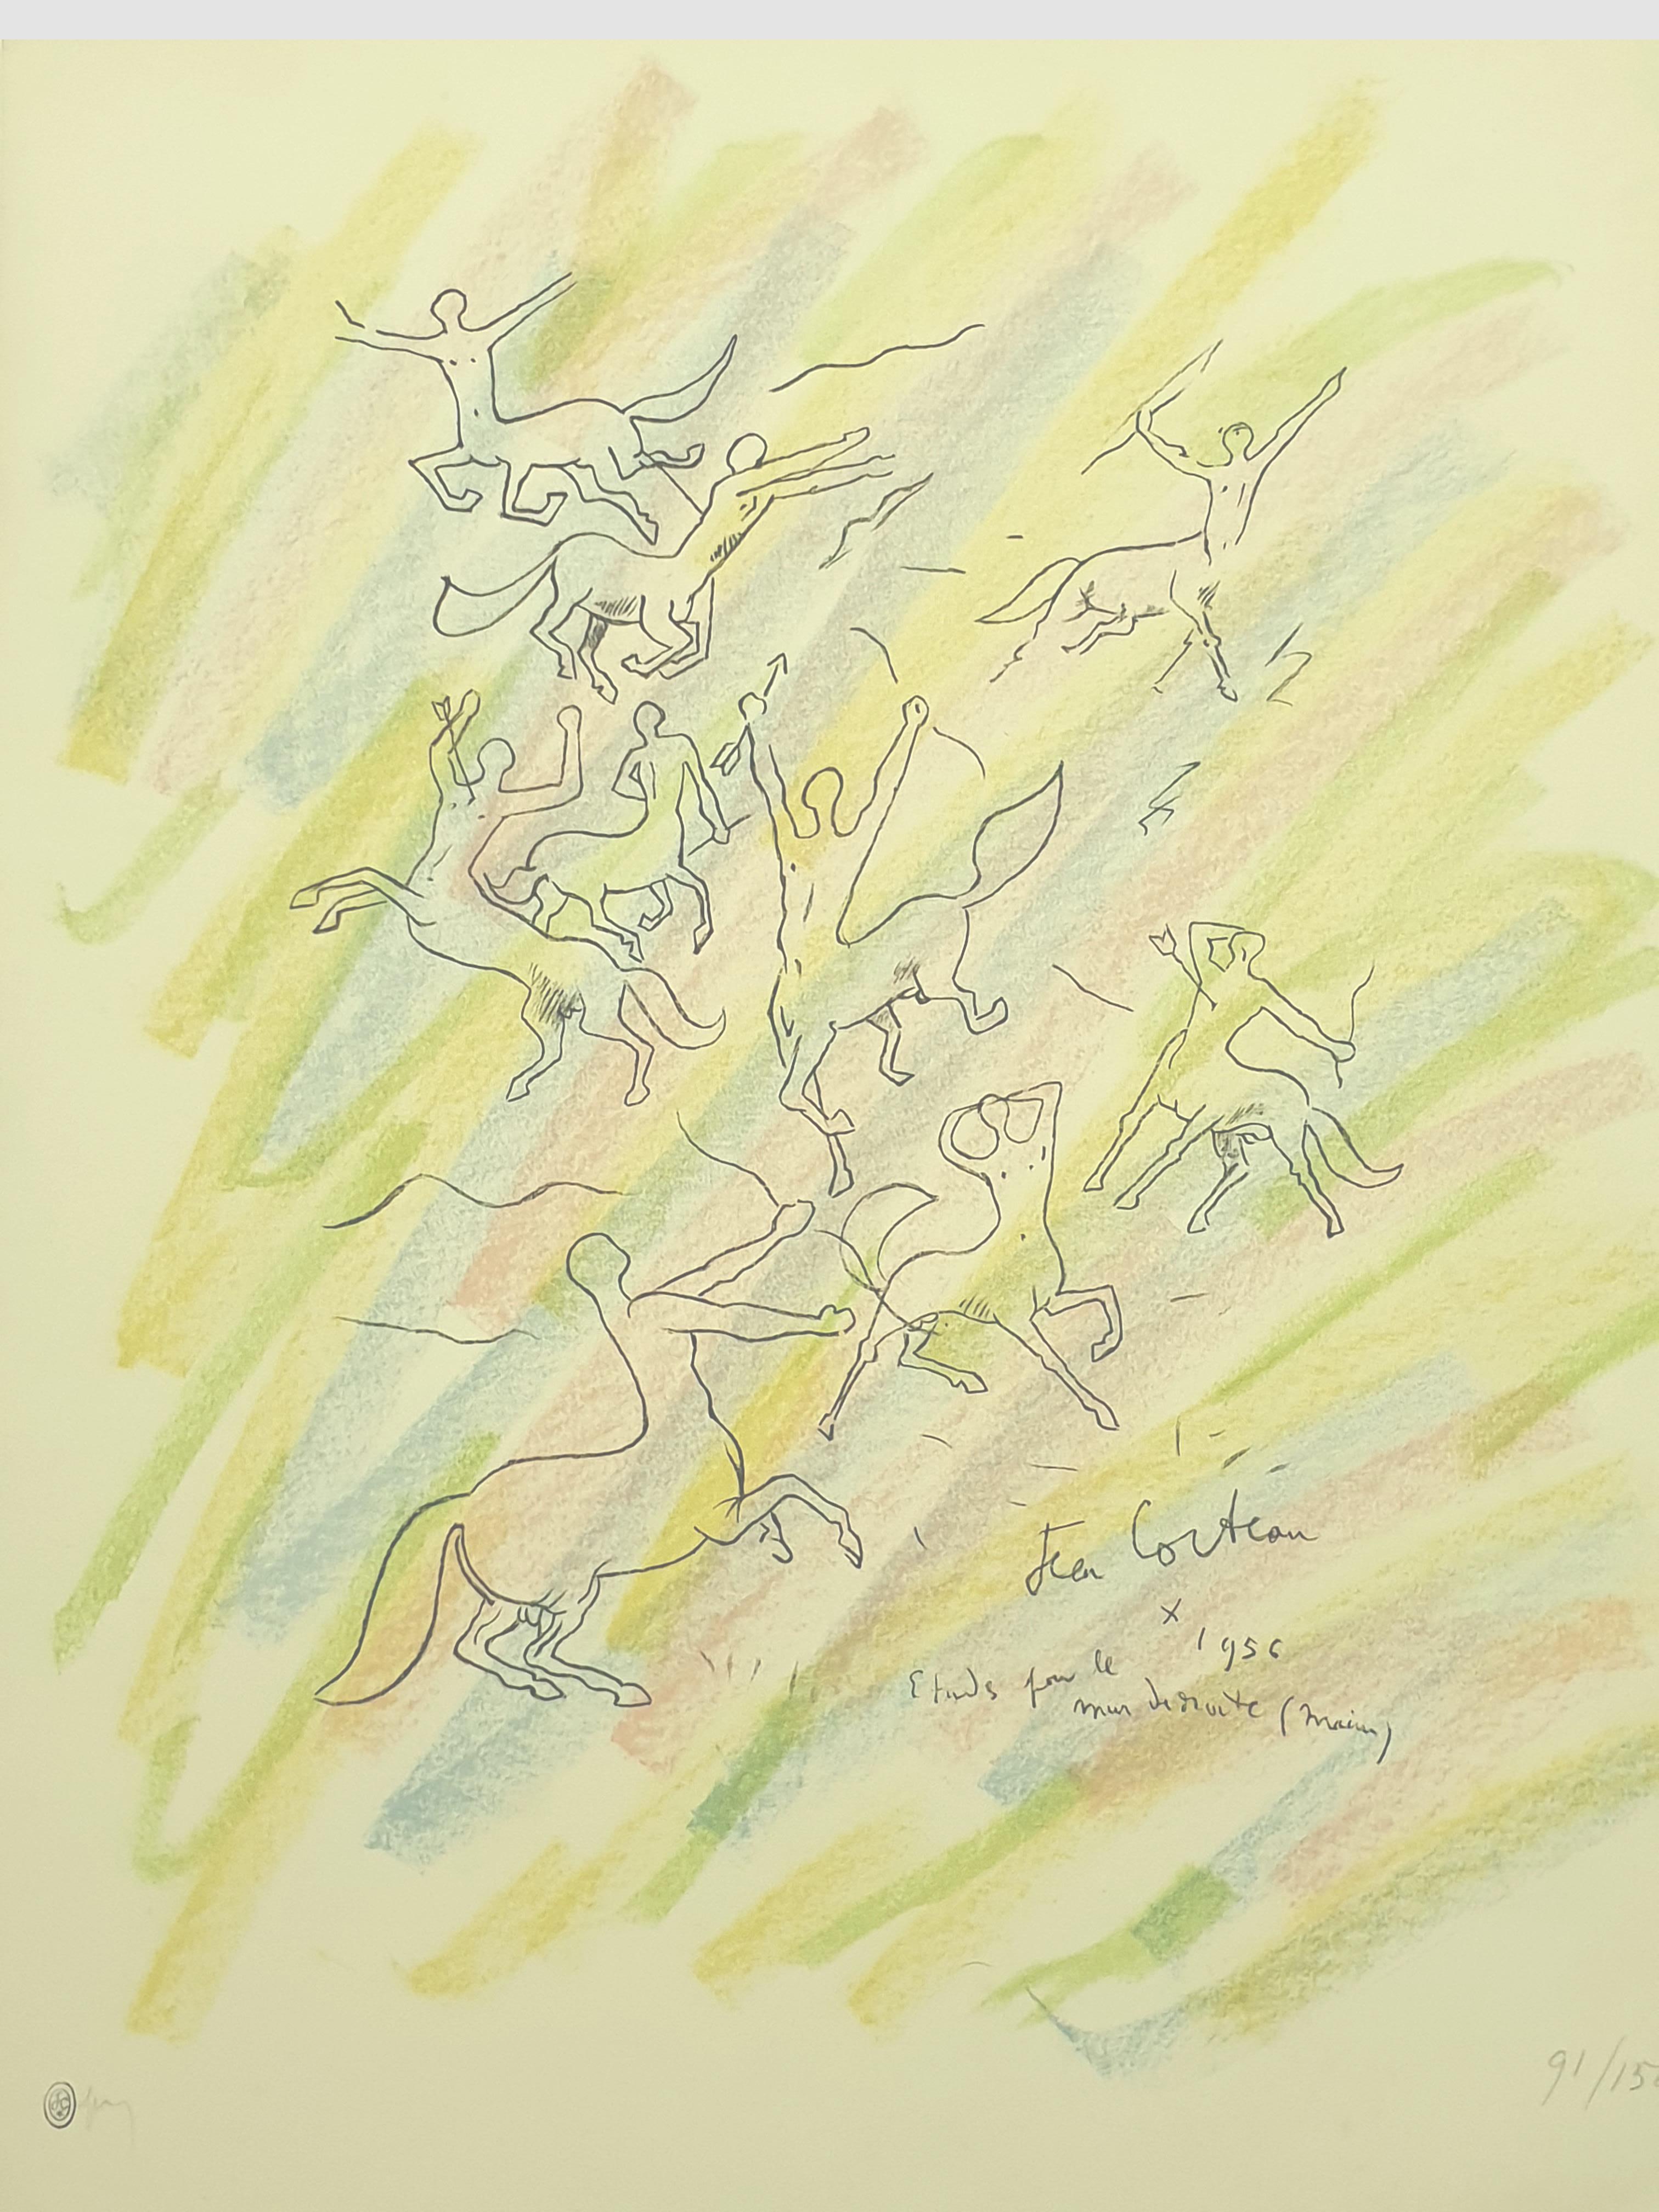 Jean Cocteau – Studie für die Wand – Original handsignierte Lithographie
Mit Bleistift signiert und nummeriert
Abmessungen: 65 x 50 cm
Auflage: 150
1956